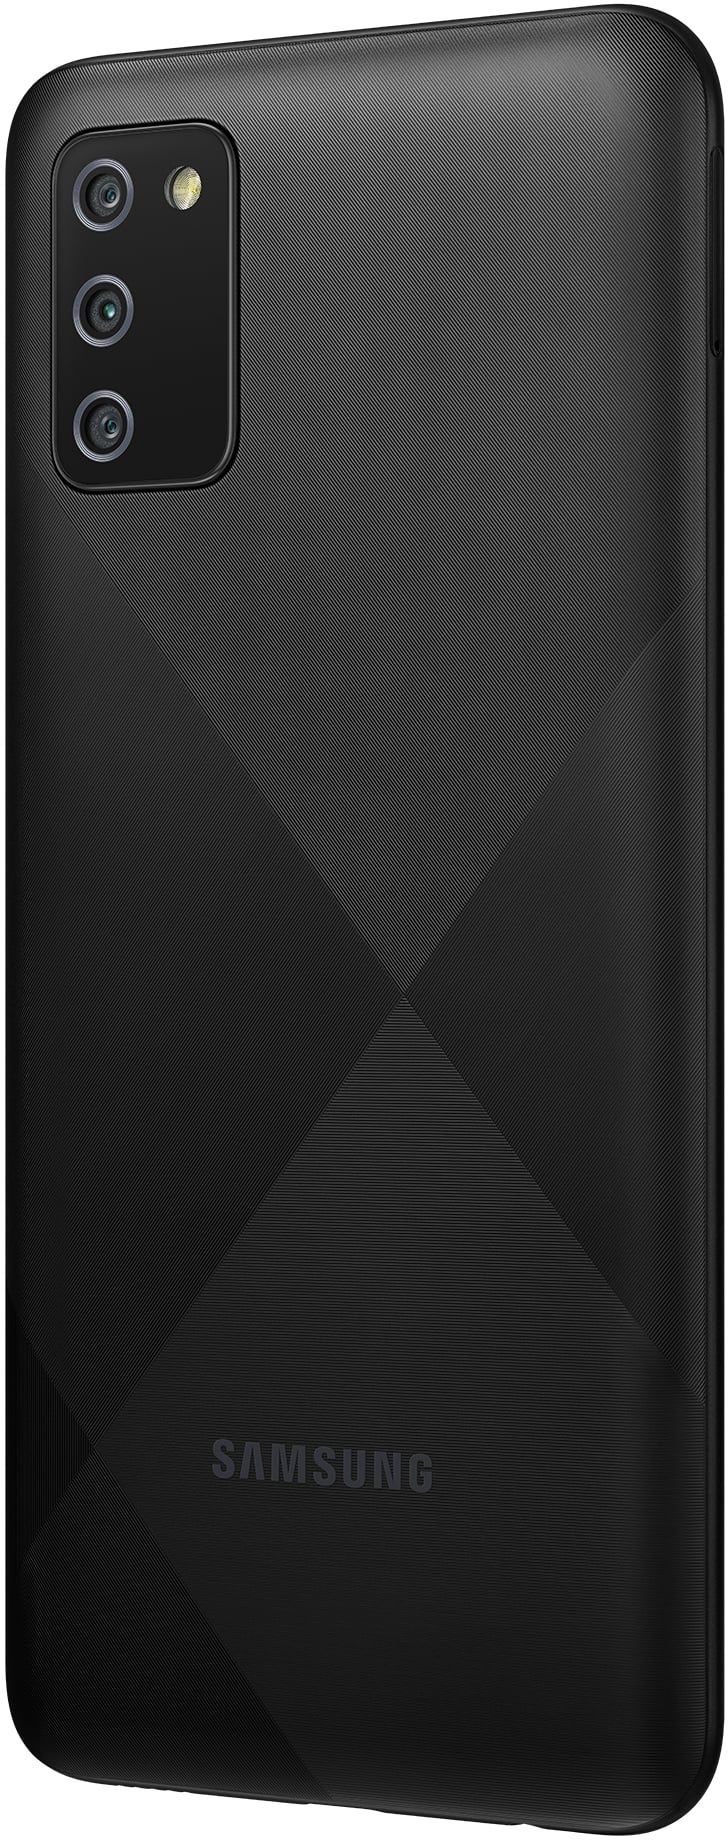 Samsung Galaxy A02s 32GB Black